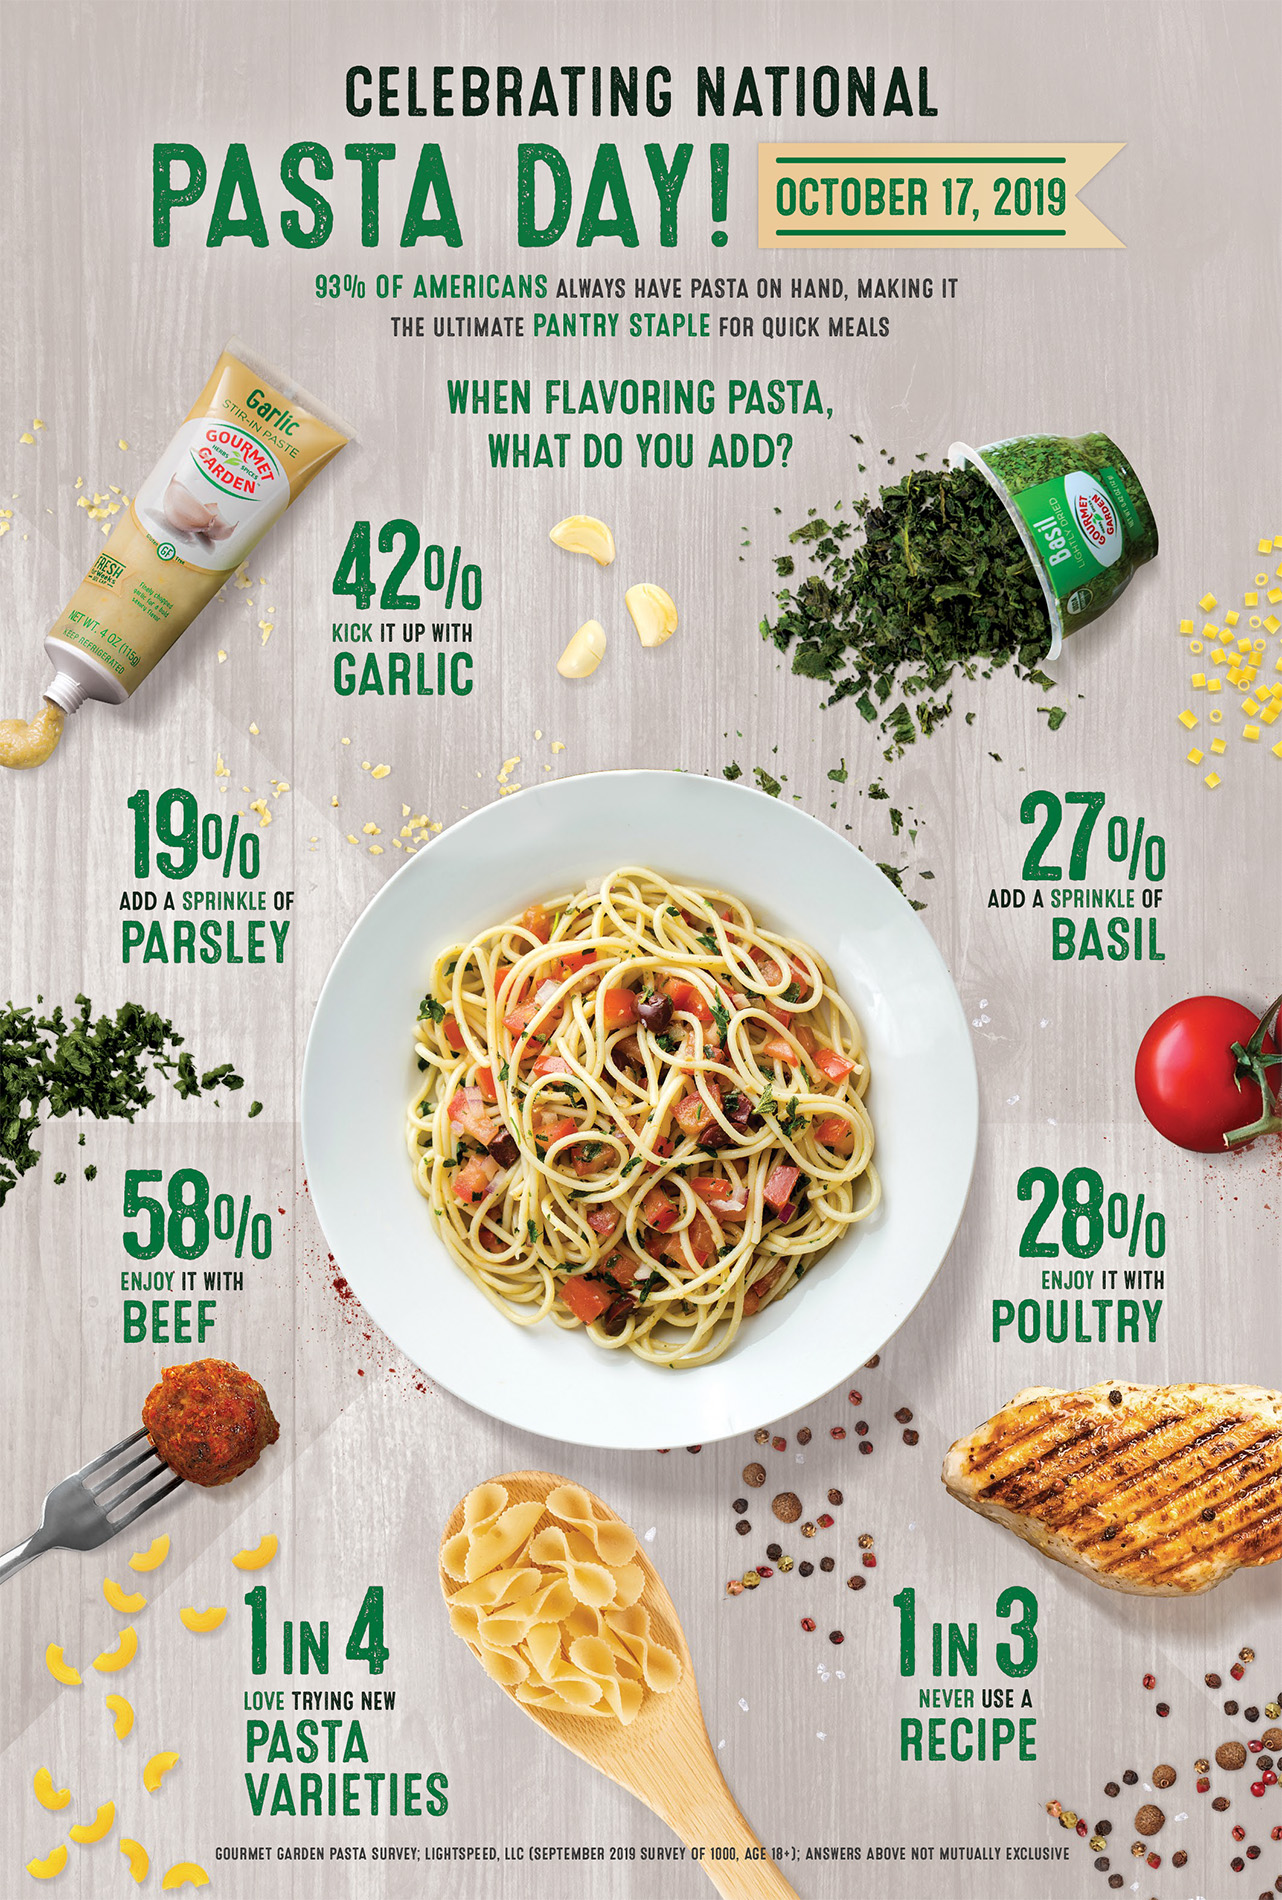 Pasta-centric survey data collected by Gourmet Garden